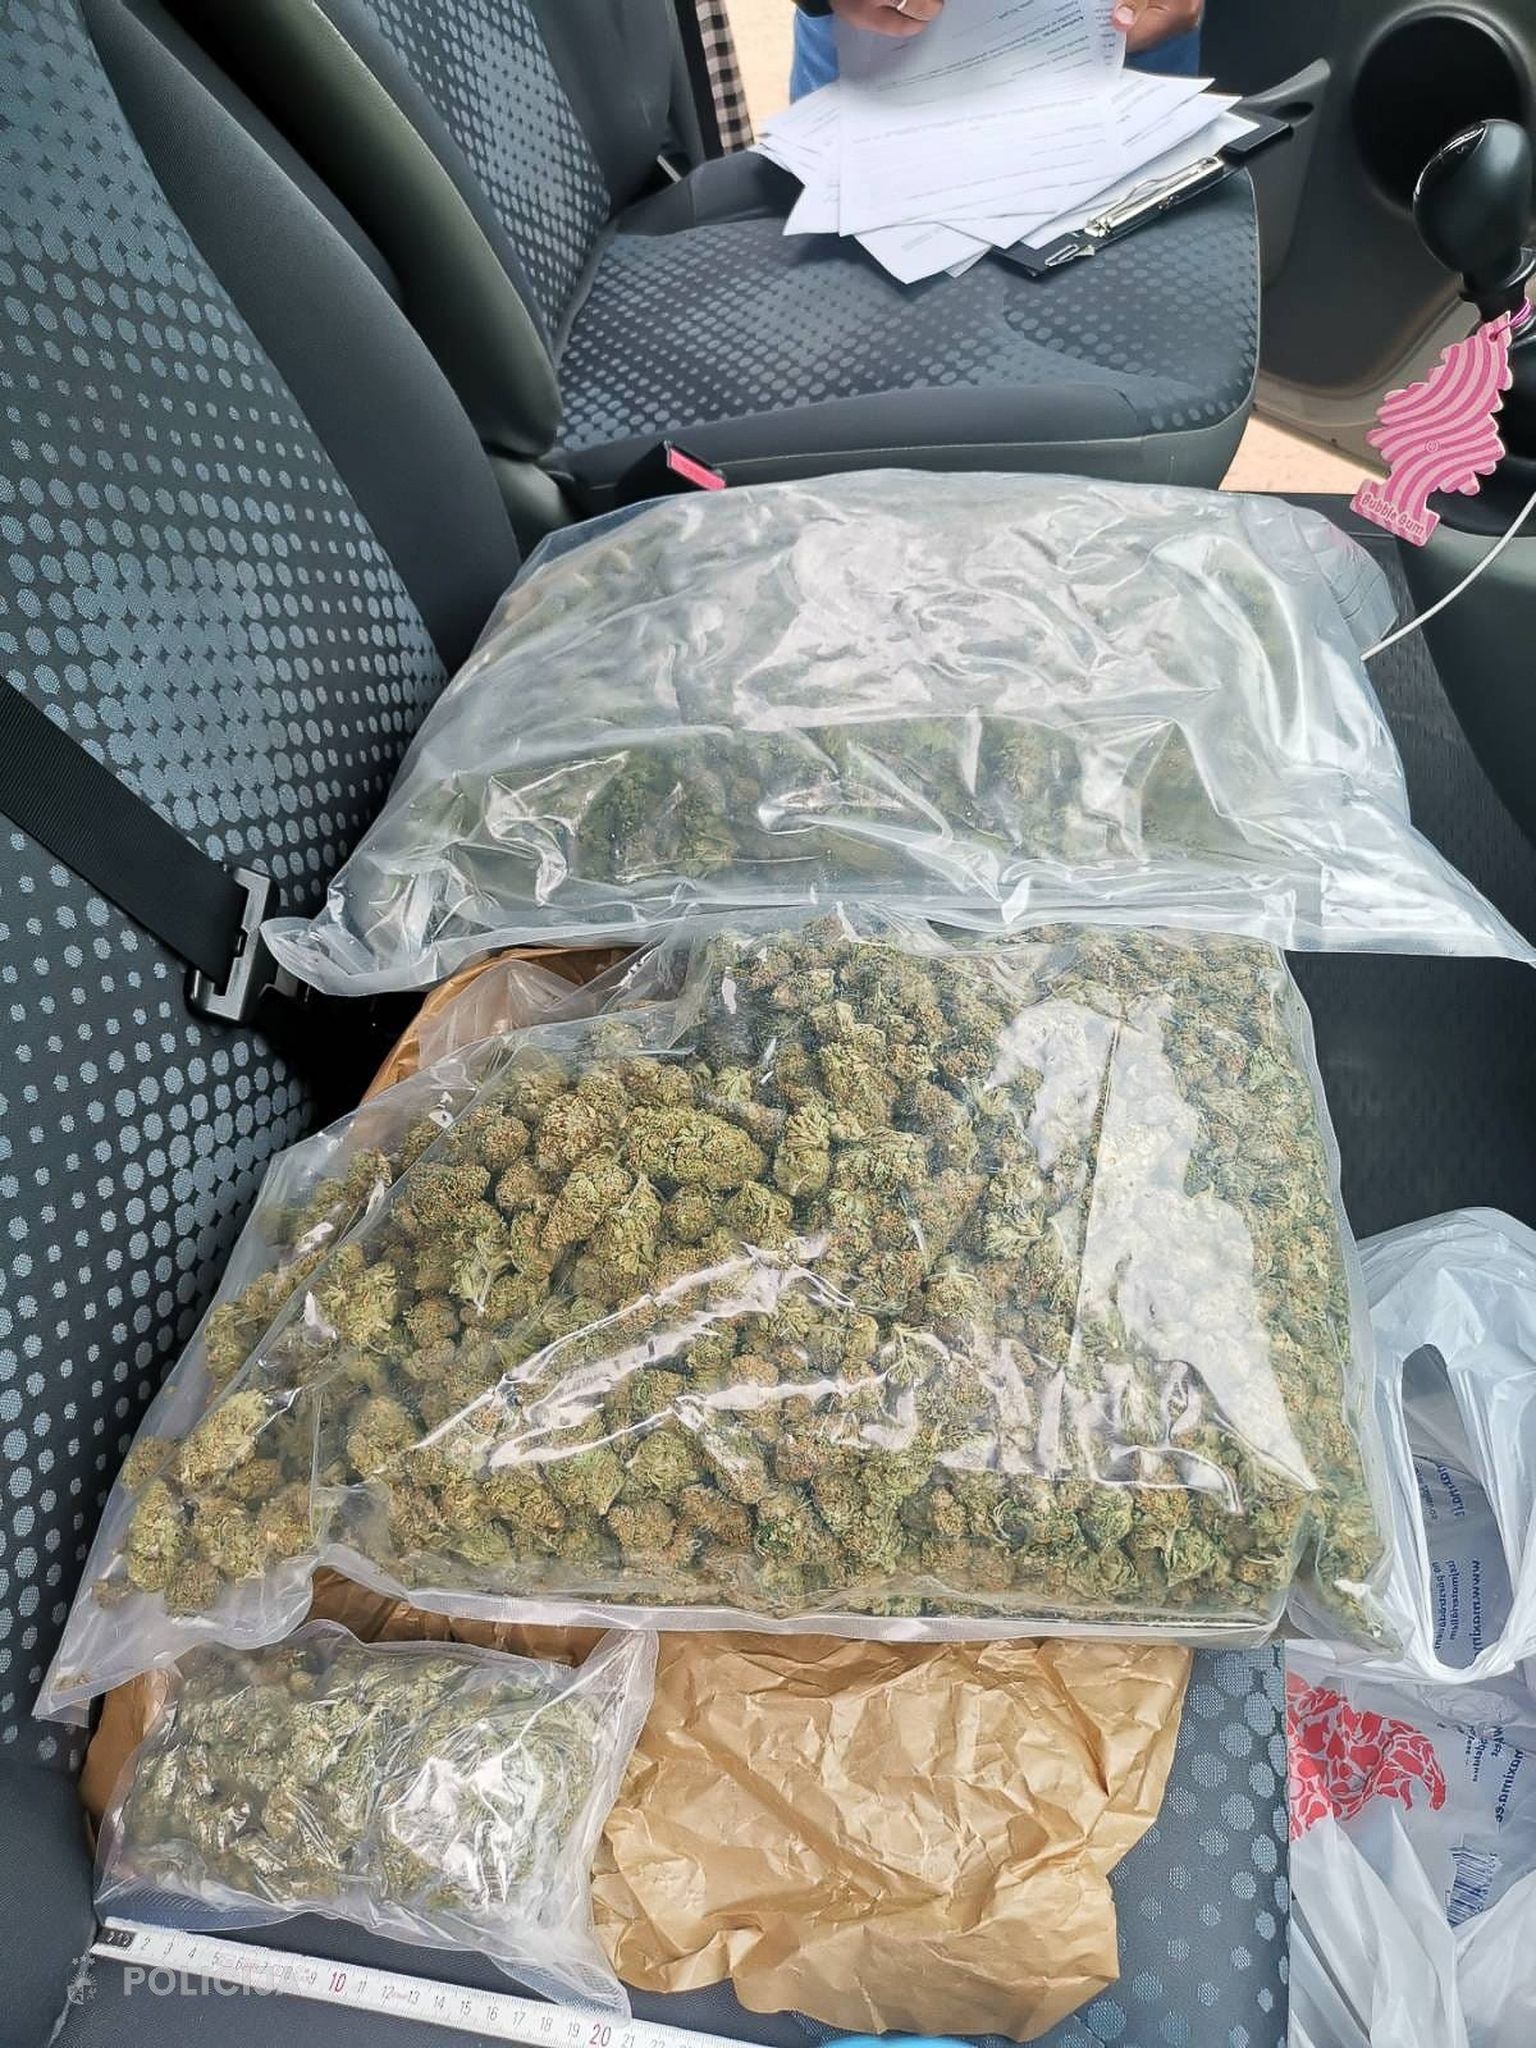 Augšdaugavas novadā policija aiztur personu, pie kuras atrod 6 kilogramus marihuānas